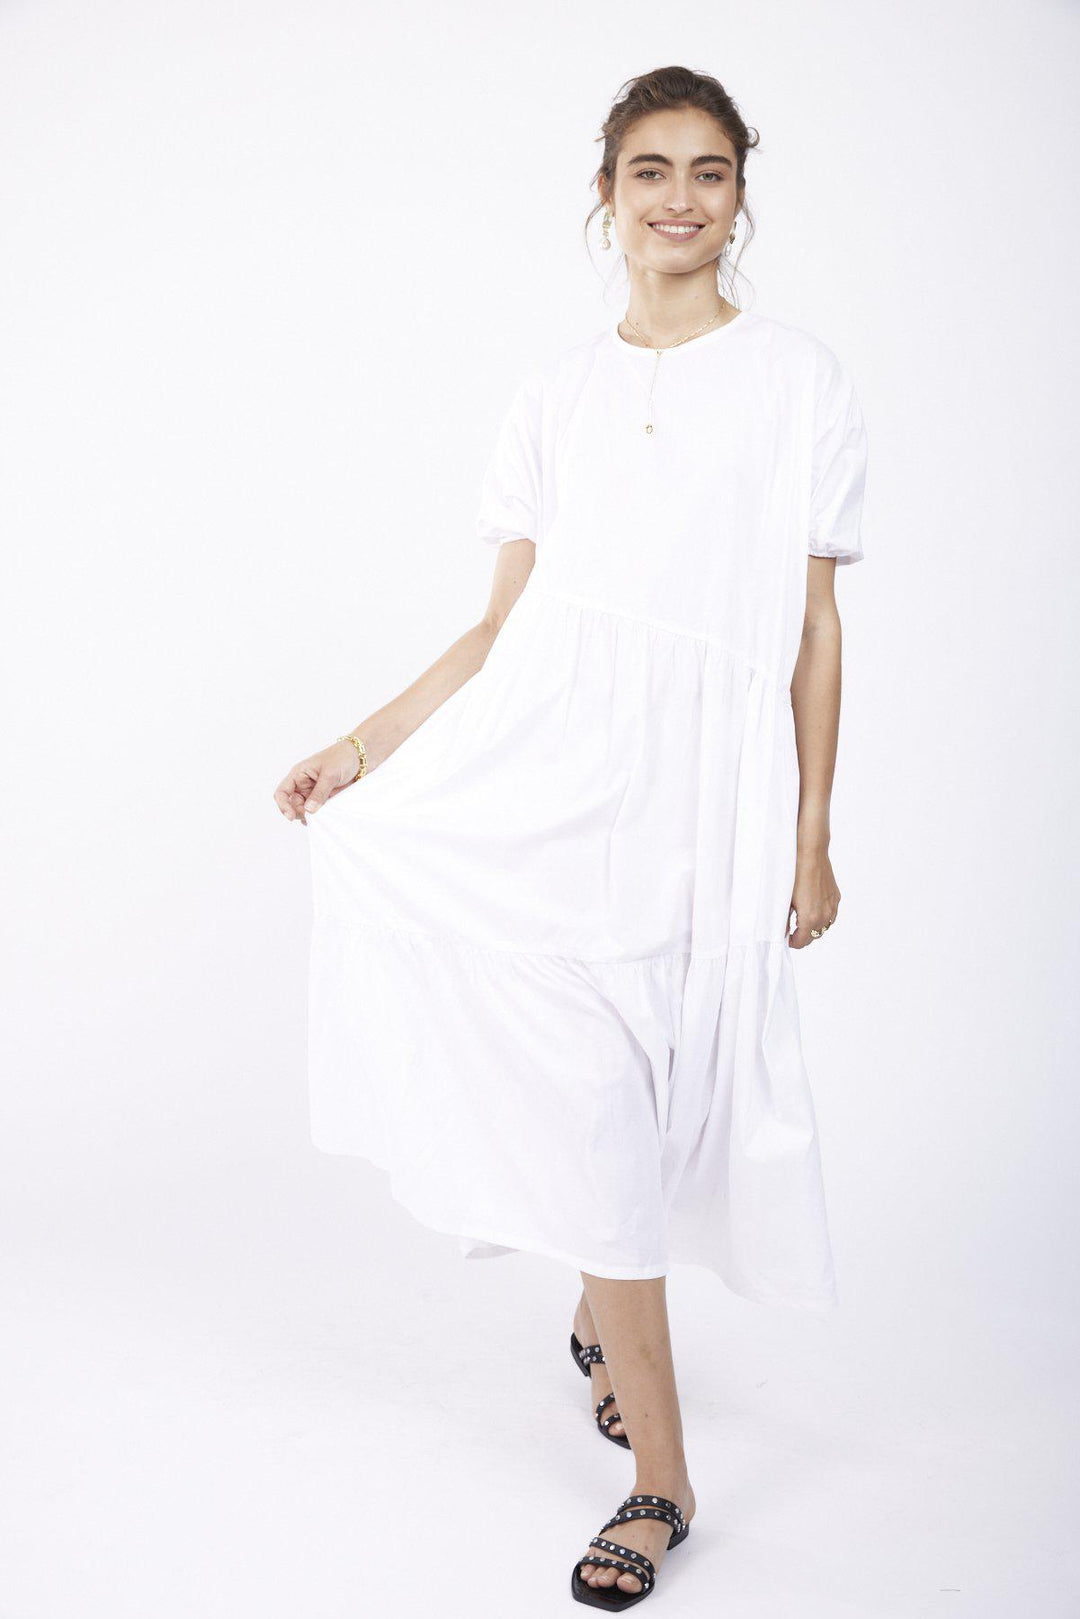 שמלת ליסבון בצבע לבן - Razili Studio